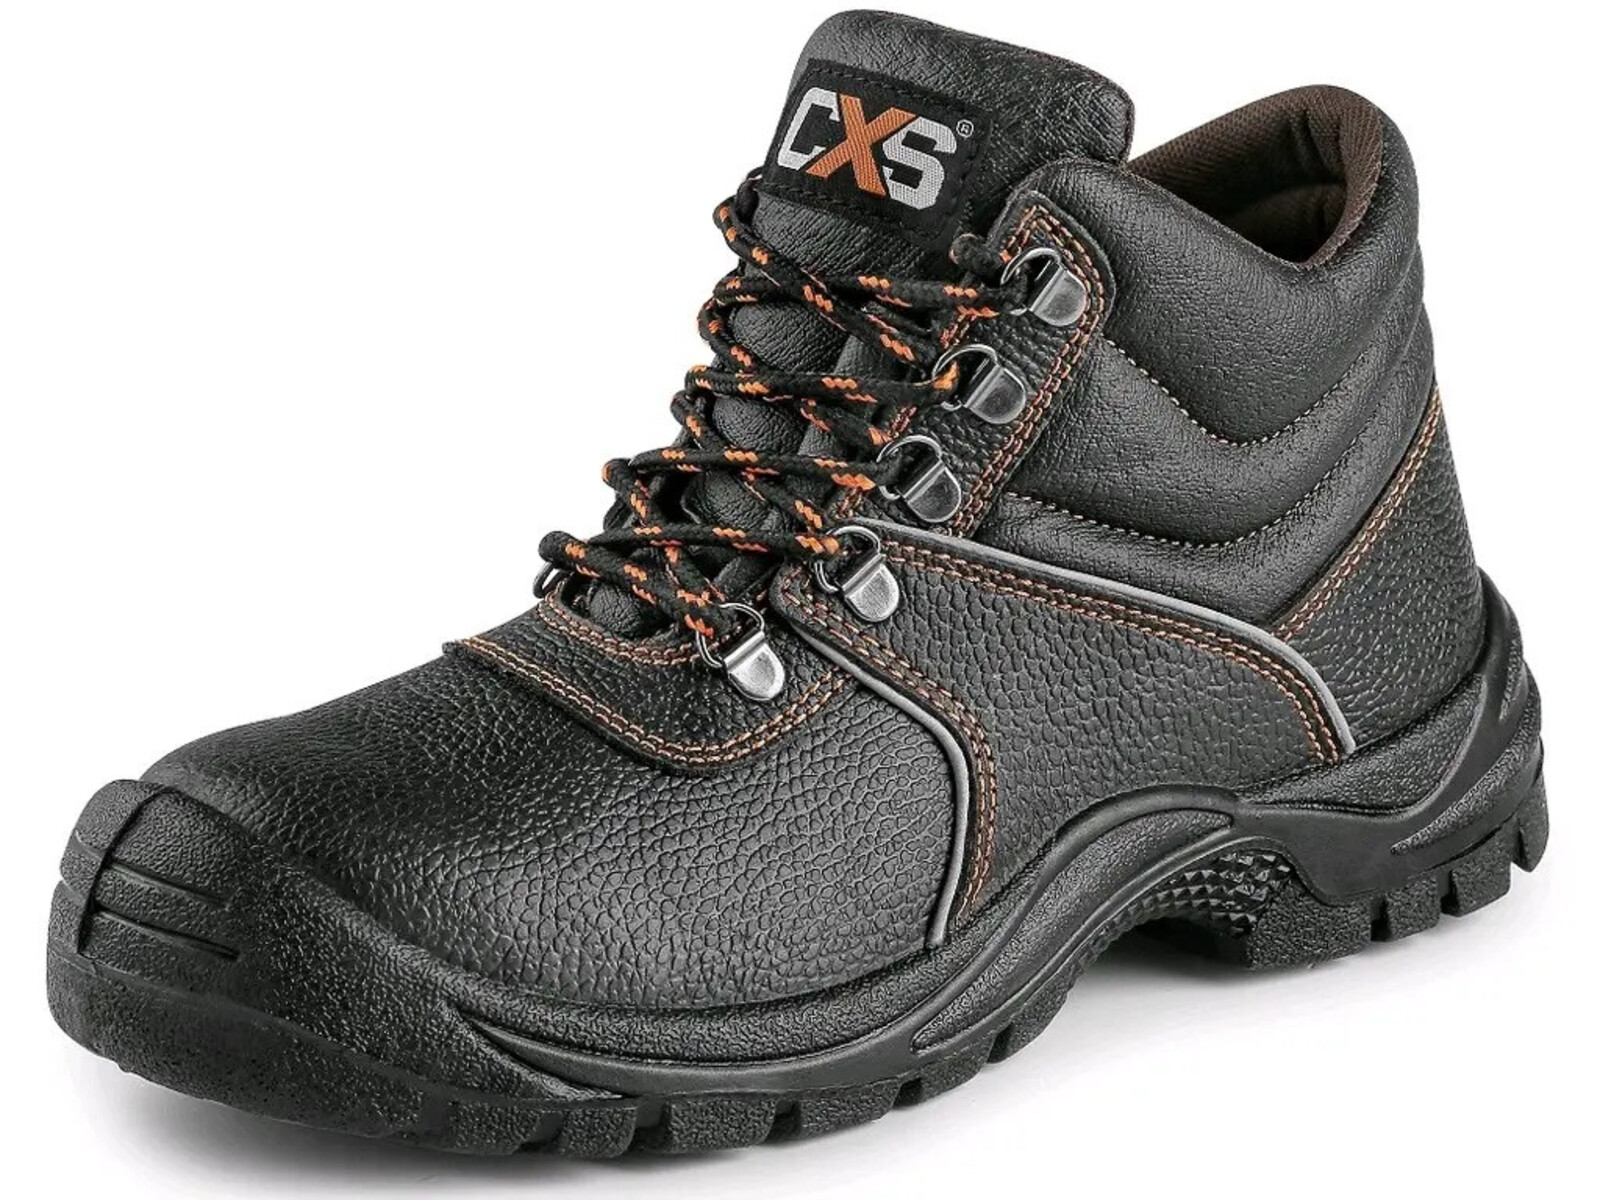 Bezpečnostná členková obuv CXS Stone Marble S2 SRC - veľkosť: 37, farba: čierna/oranžová